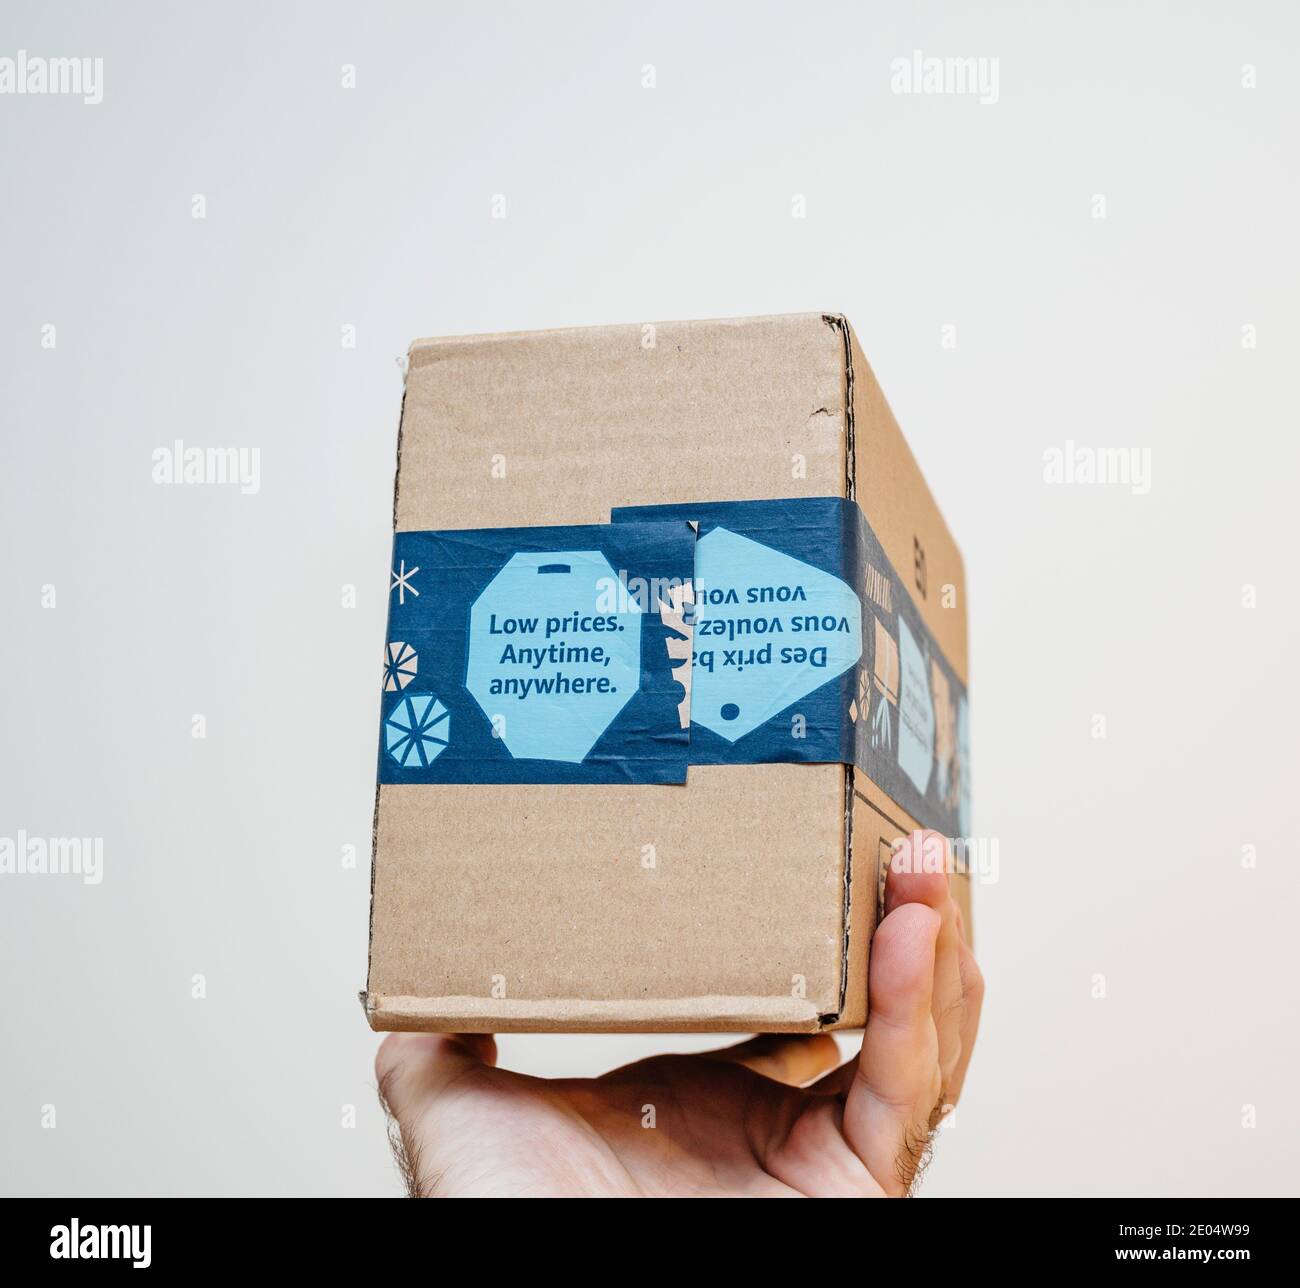 Paris, France - 12 décembre 2020: POV homme main tenant paquet de colis  d'Amazon Prime avec bas prix n'importe quand, partout publicité sur le  paquet - isolé sur blanc Photo Stock - Alamy